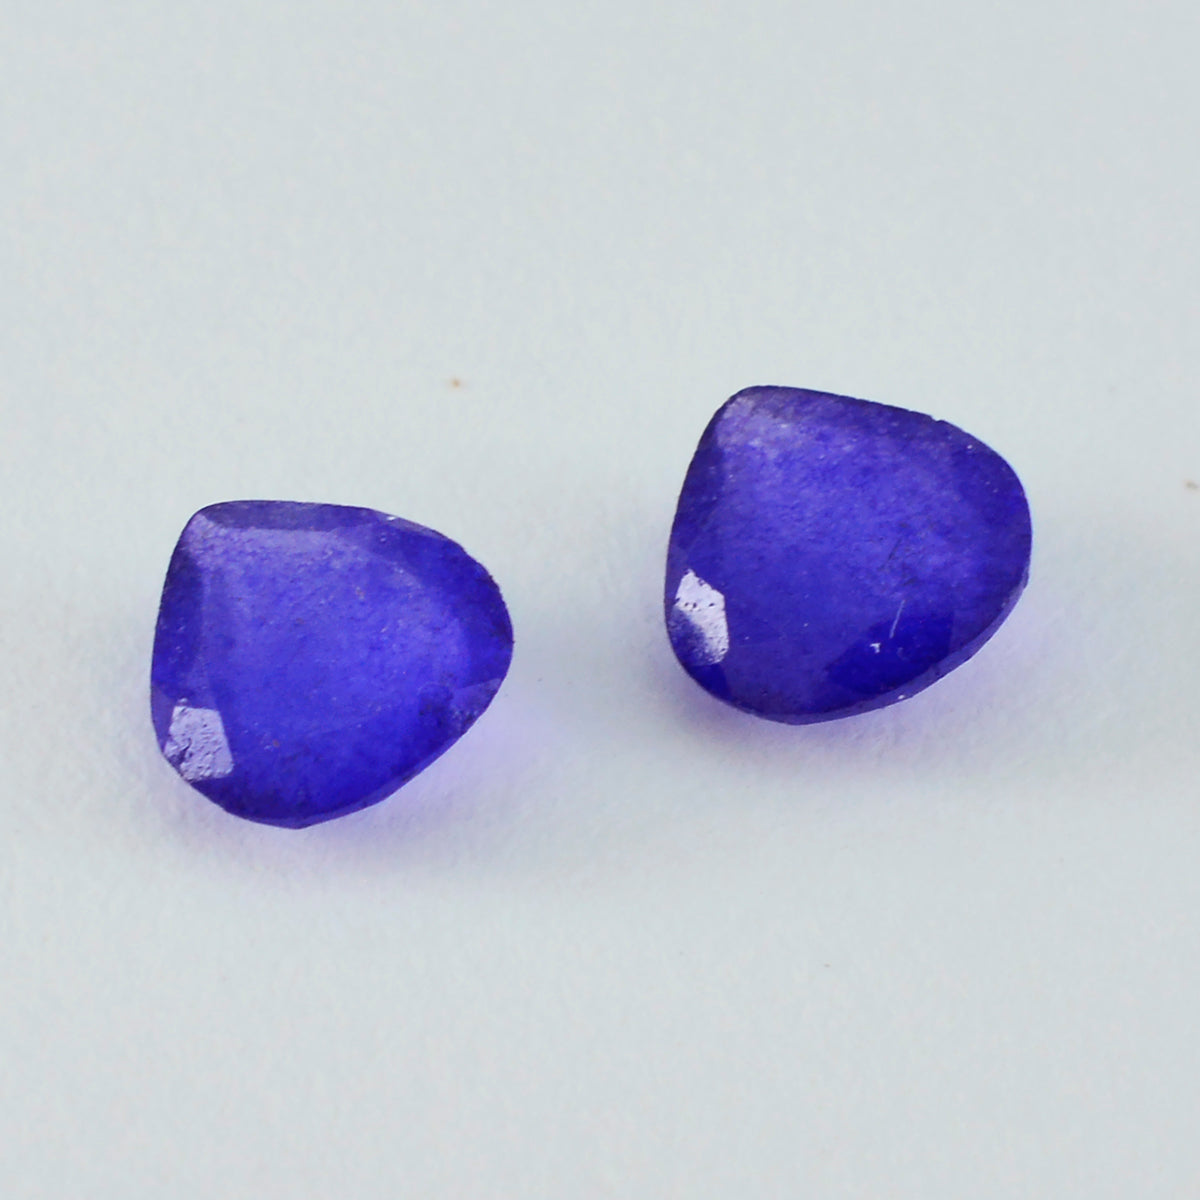 riyogems 1 шт. настоящая синяя яшма граненая 13x13 мм в форме сердца, красивые качественные свободные драгоценные камни